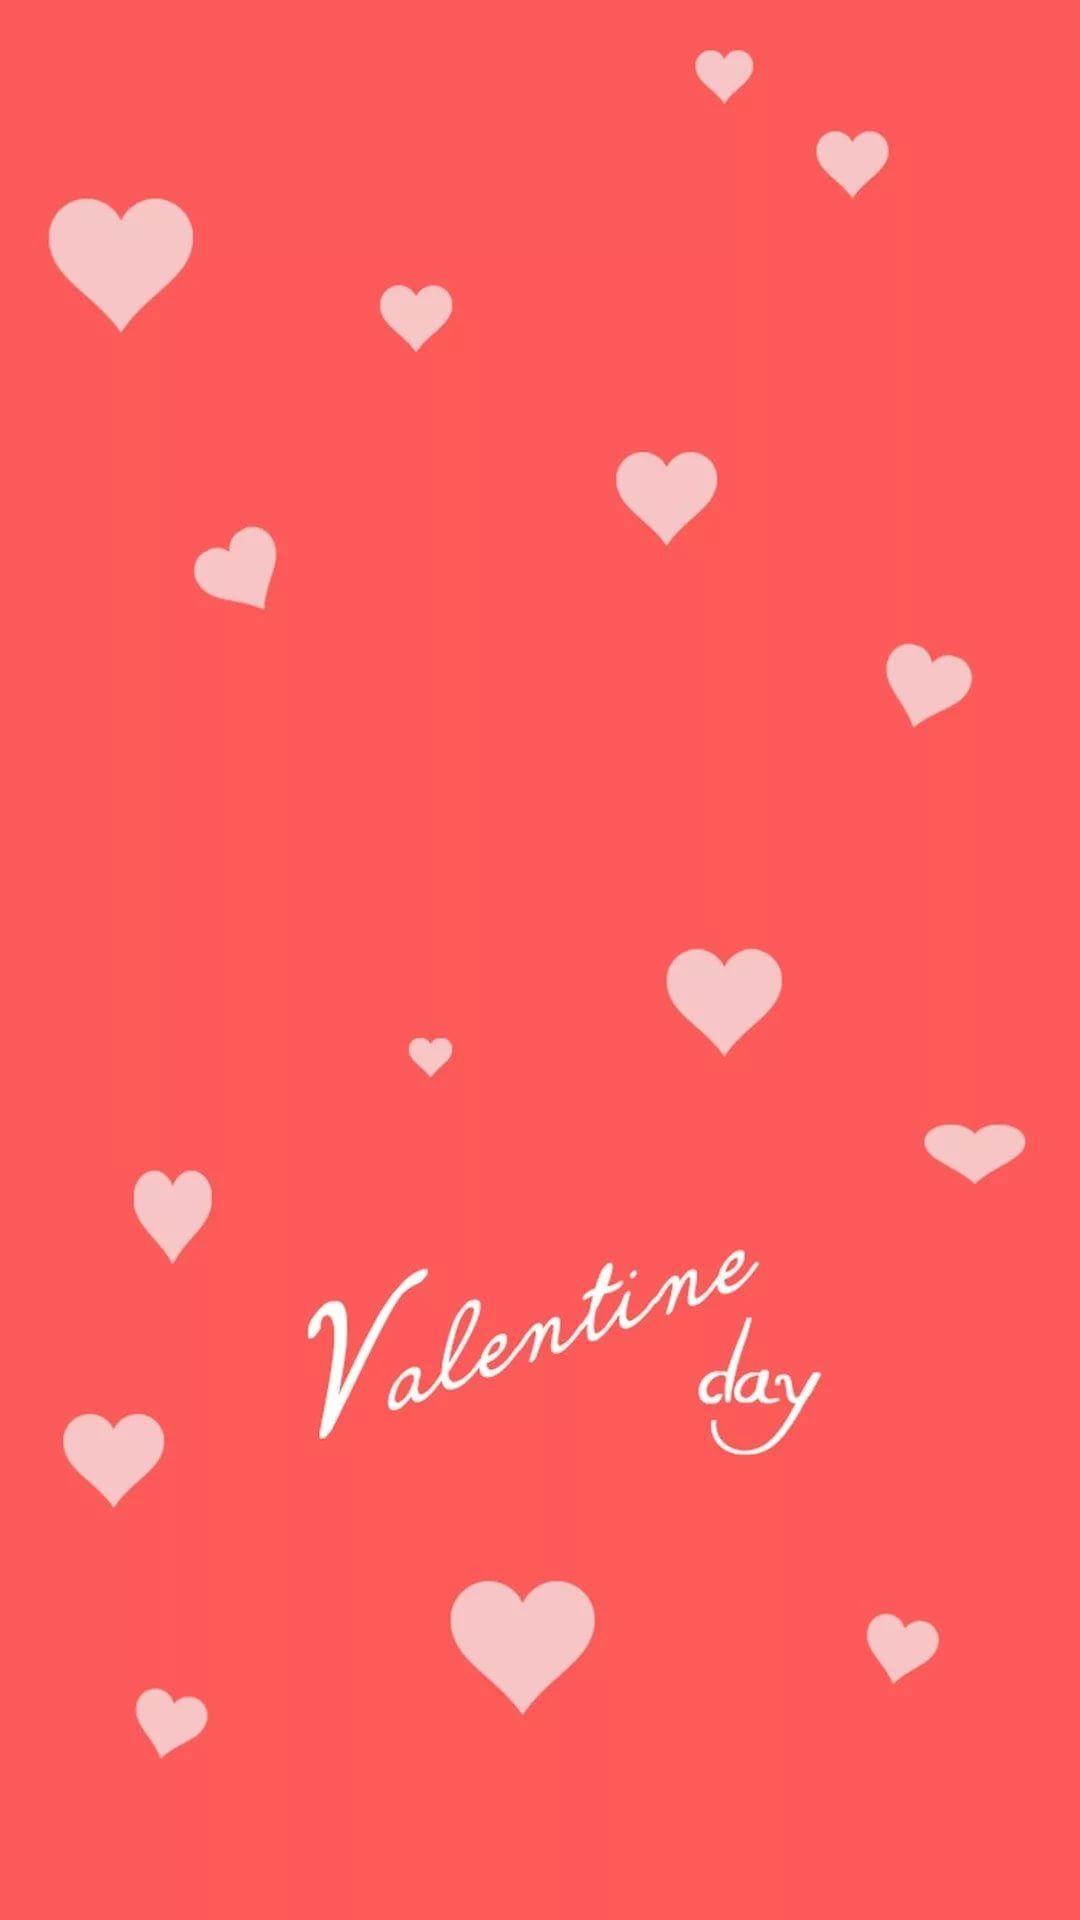 Happy Valentines Day   Valentines wallpaper iphone Pink valentine  wallpaper Holiday iphone wallpaper